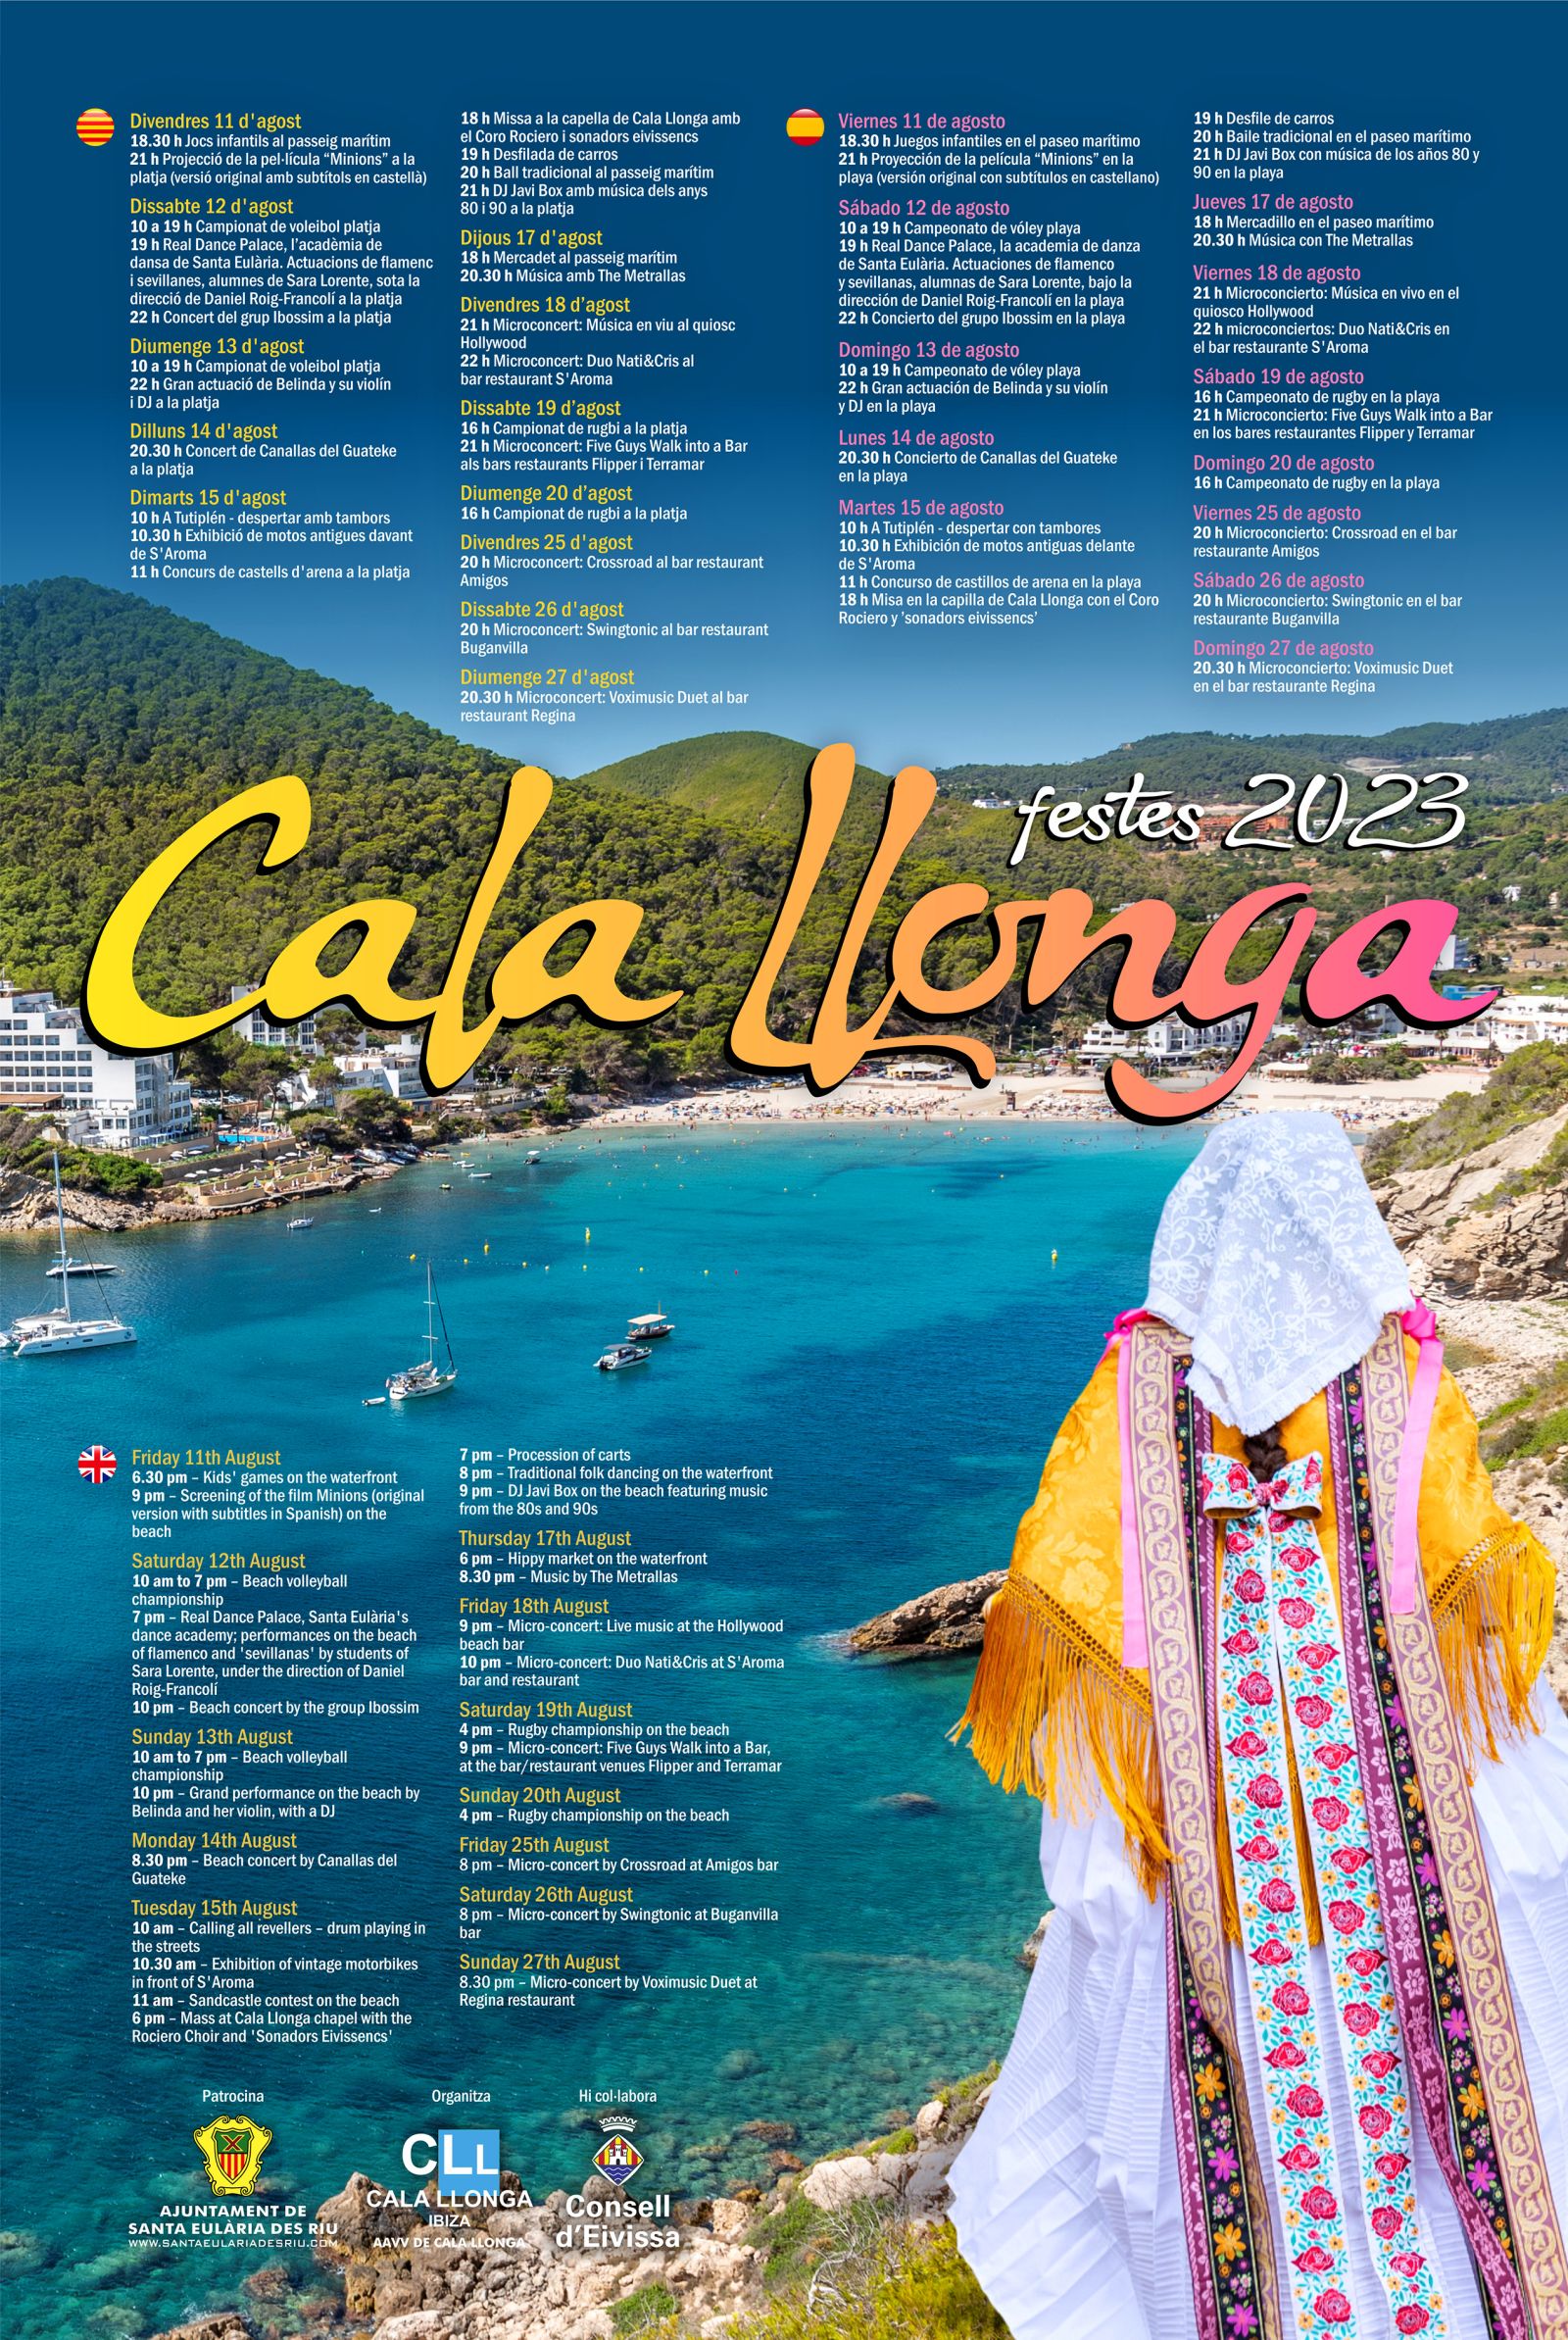 La música, l'esport i les activitats per als més petits segueixen com a senyes d'identitat de les festes de Cala Llonga 2023